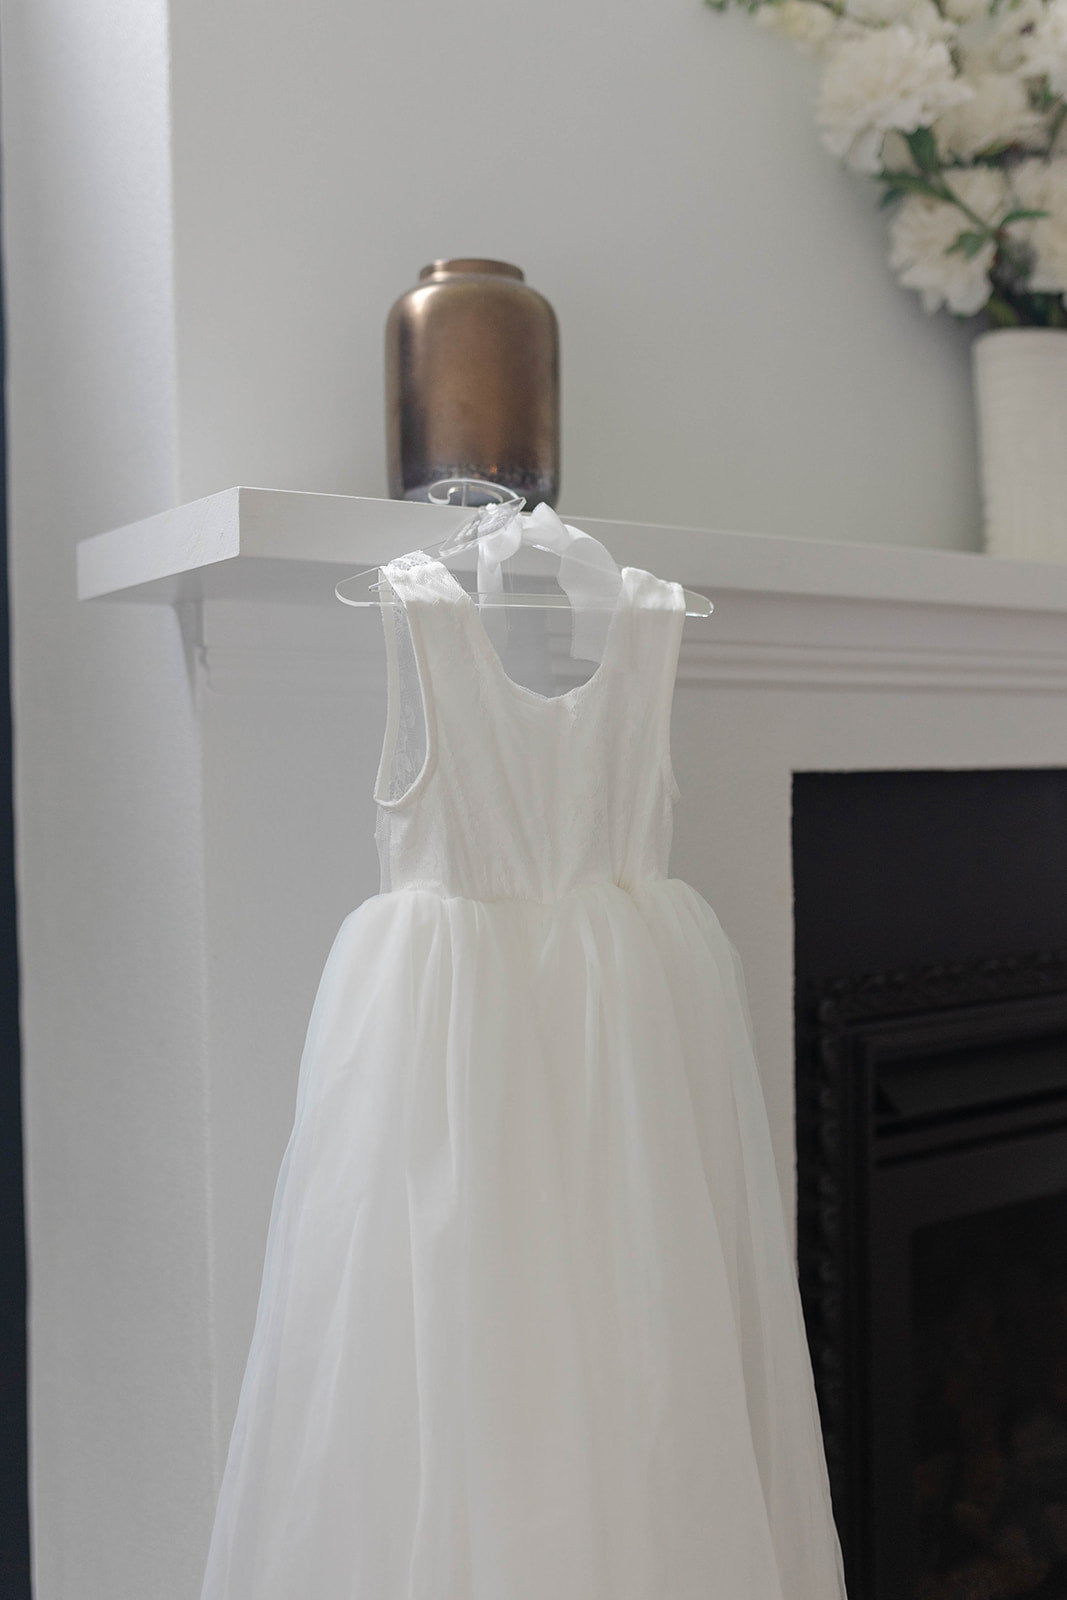 Acrylic Dress Hanger